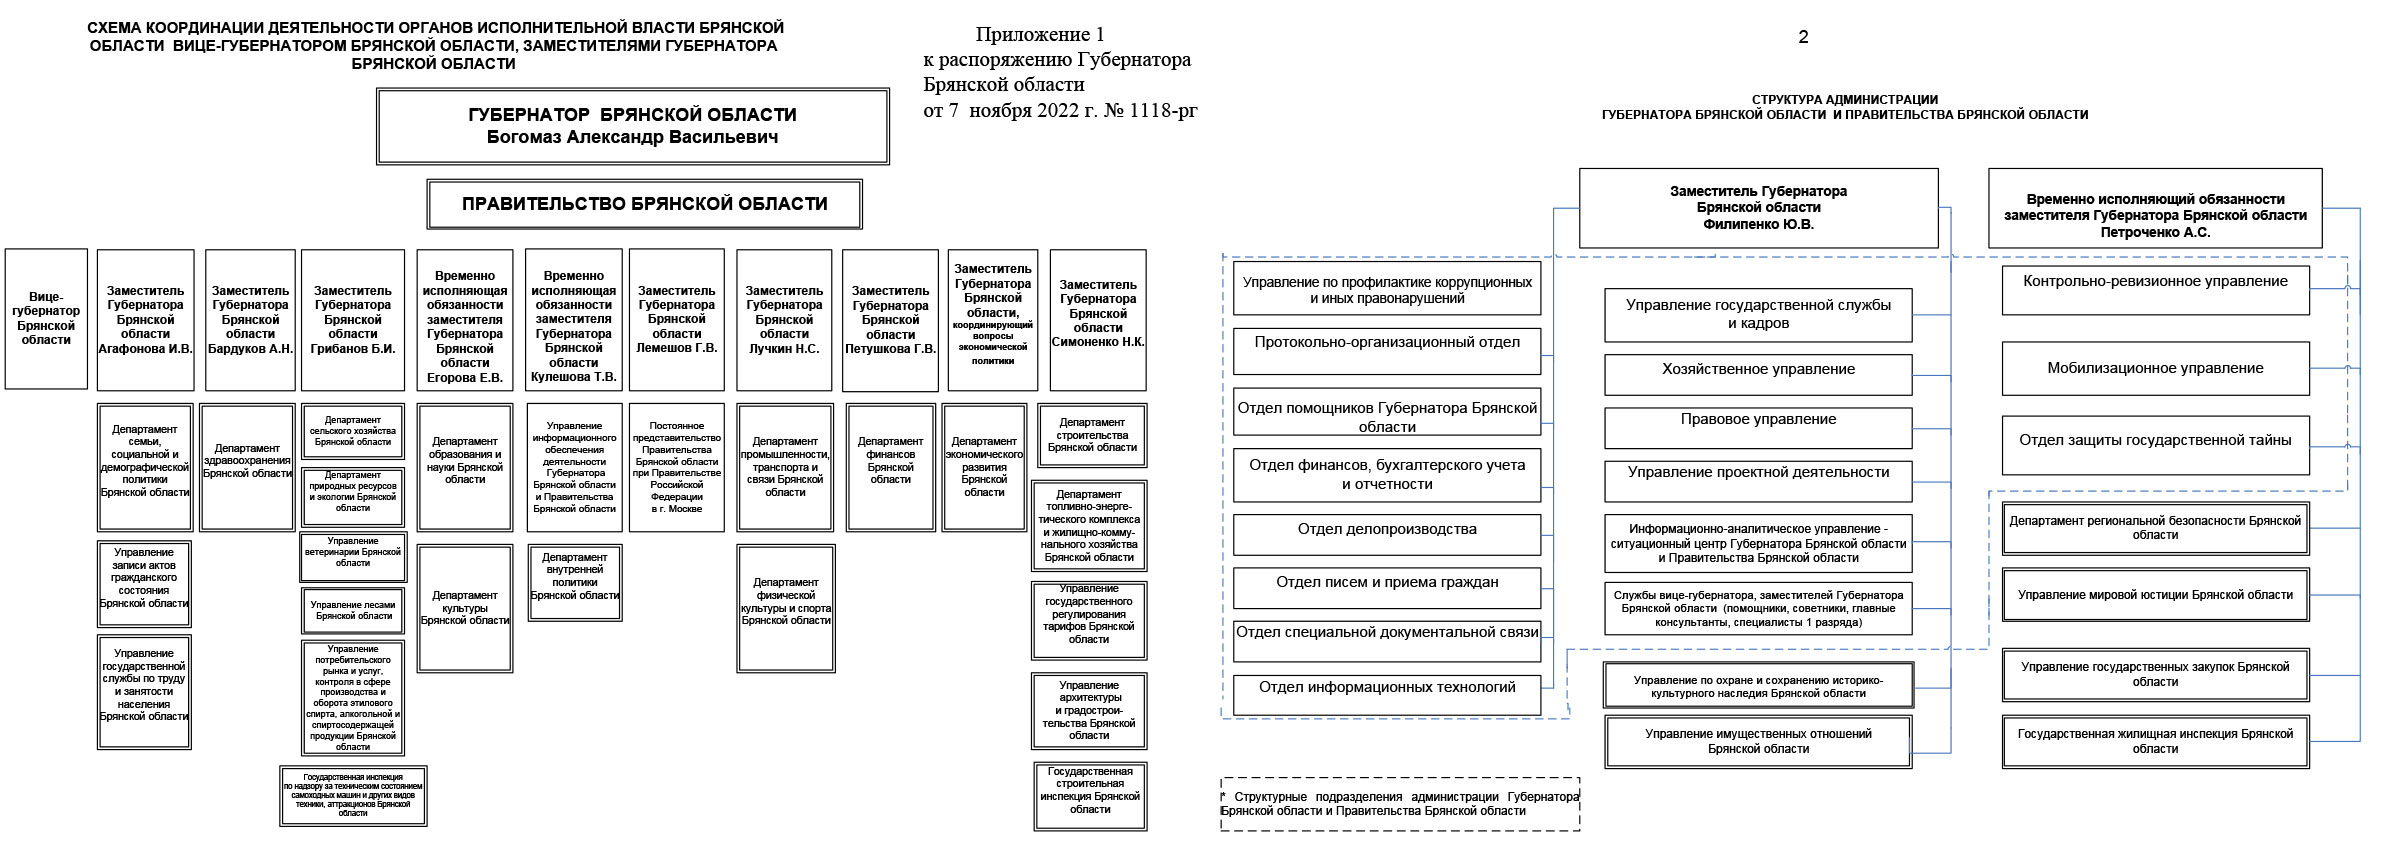 Структура органов государственной власти Брянской области